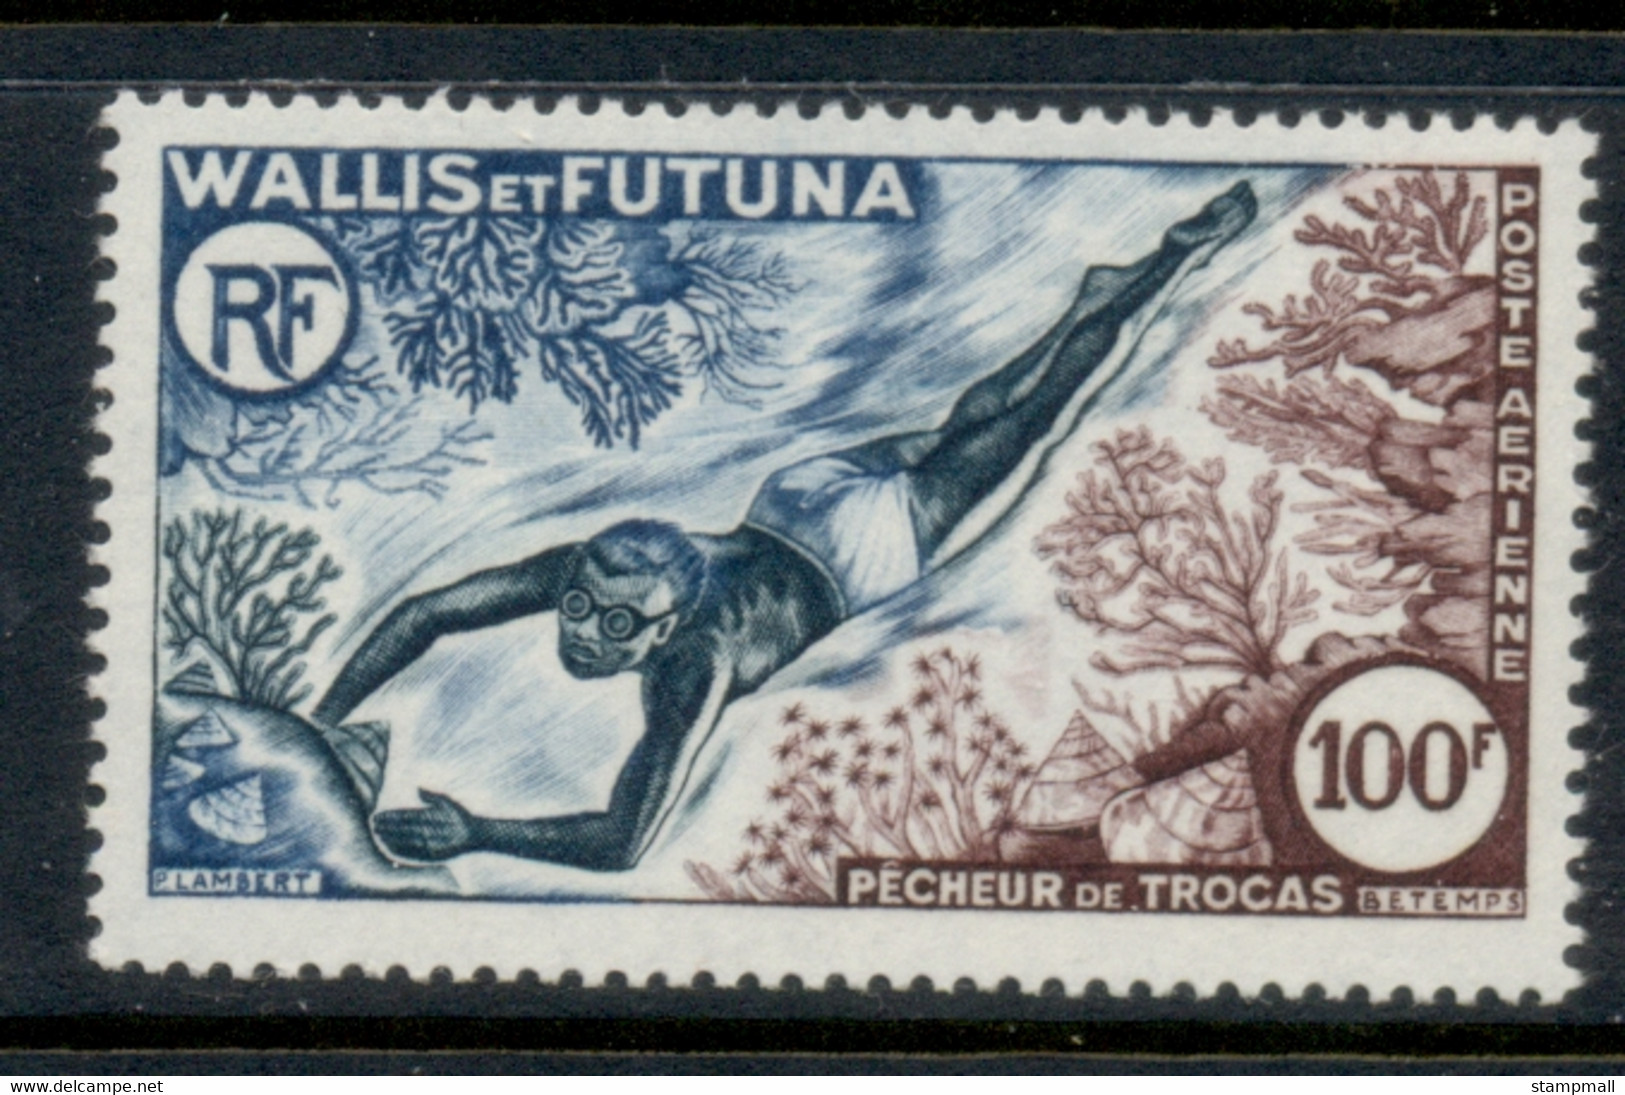 Wallis & Futuna 1962 Shell Diver MUH - Ungebraucht